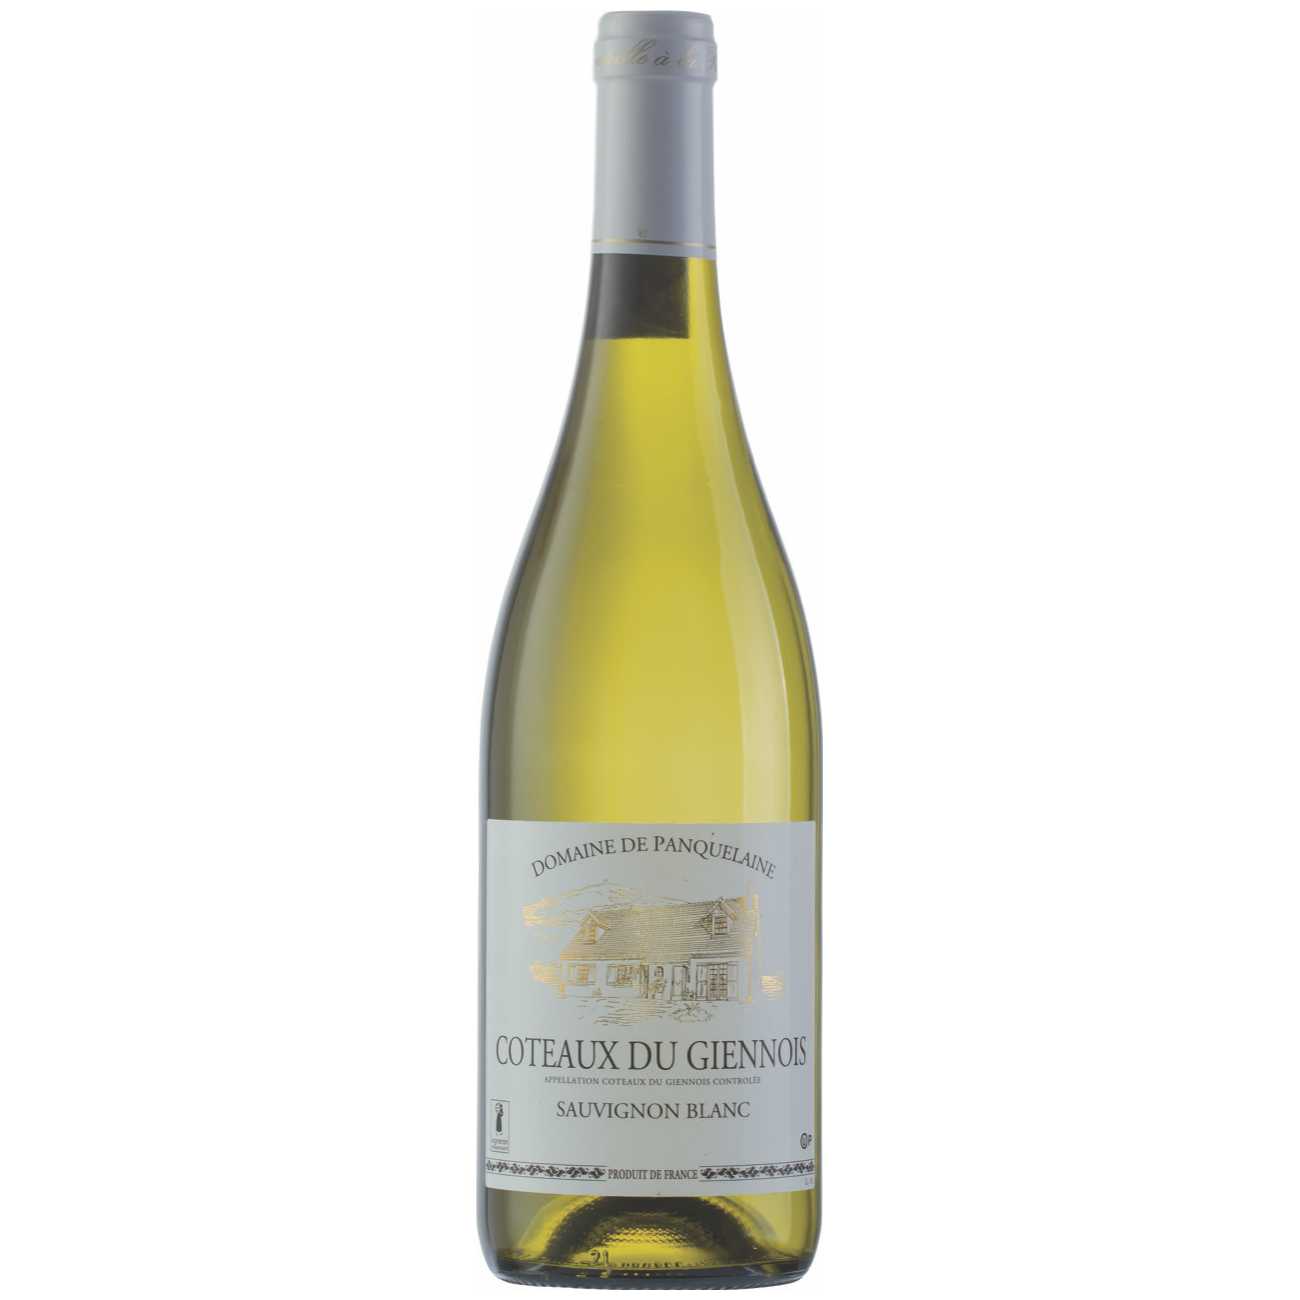 Domaine De Panquelaine Coteaux Du Giennois Sauvignon Blanc - A Kosher Wine From France